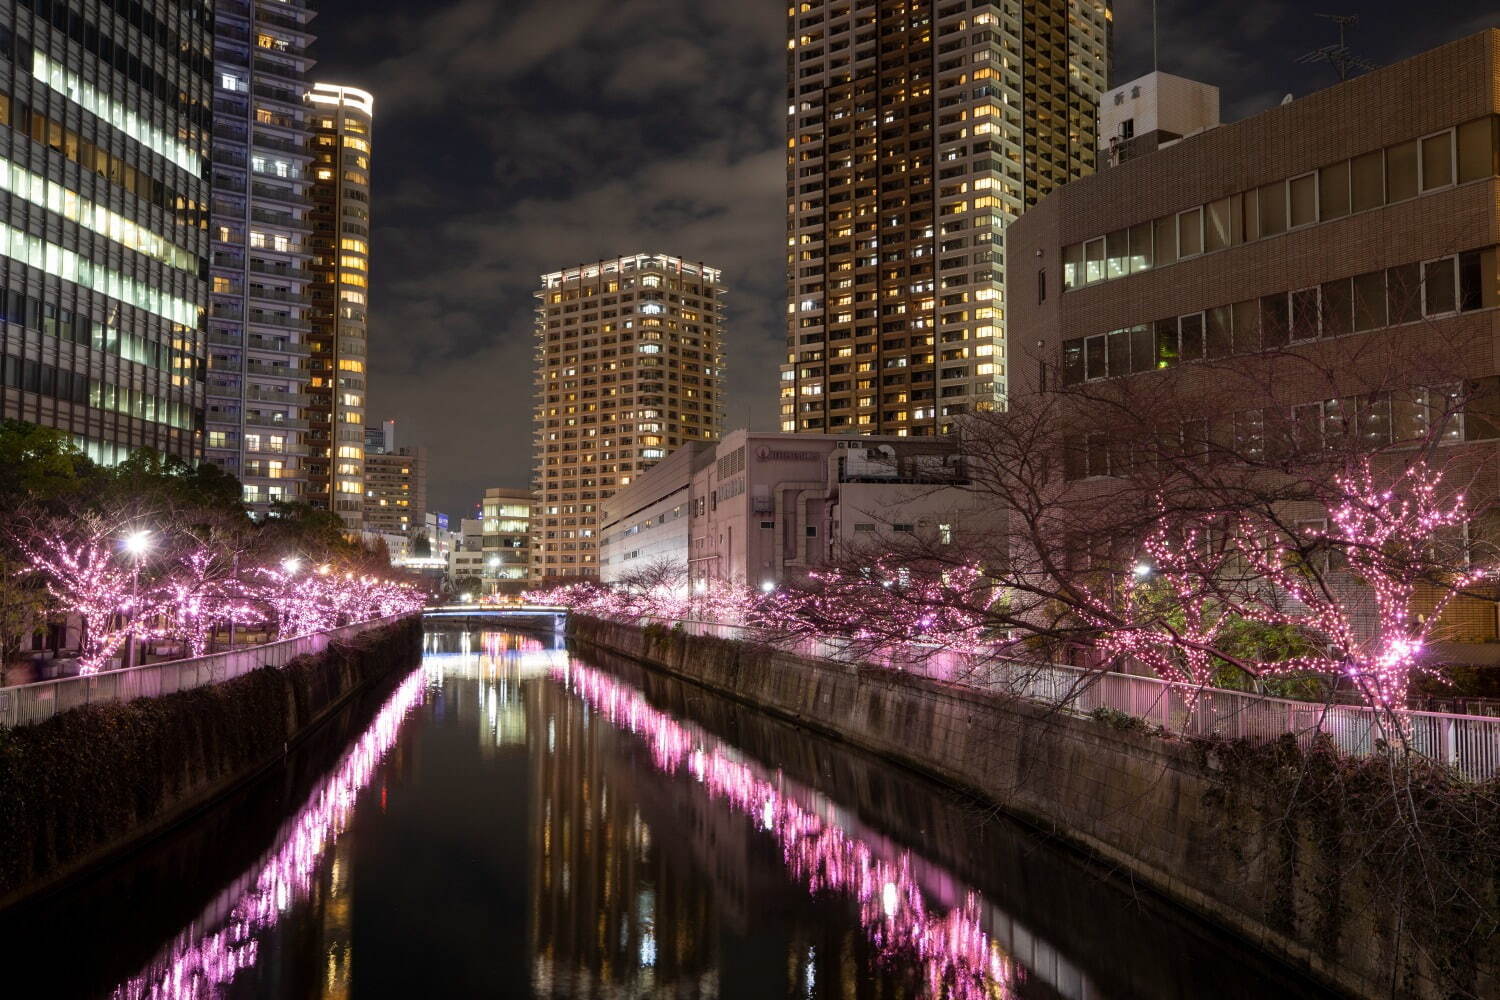 งานประดับไฟที่แม่น้ำเมกุโระ "Meguro River Everyone's Illumination 2023" และ "Winter Cherry Blossoms" - แม่น้ำเมกุโระ จังหวัดโตเกียวงานประดับไฟที่แม่น้ำเมกุโระ "Meguro River Everyone's Illumination 2023" และ "Winter Cherry Blossoms" - แม่น้ำเมกุโระ จังหวัดโตเกียว